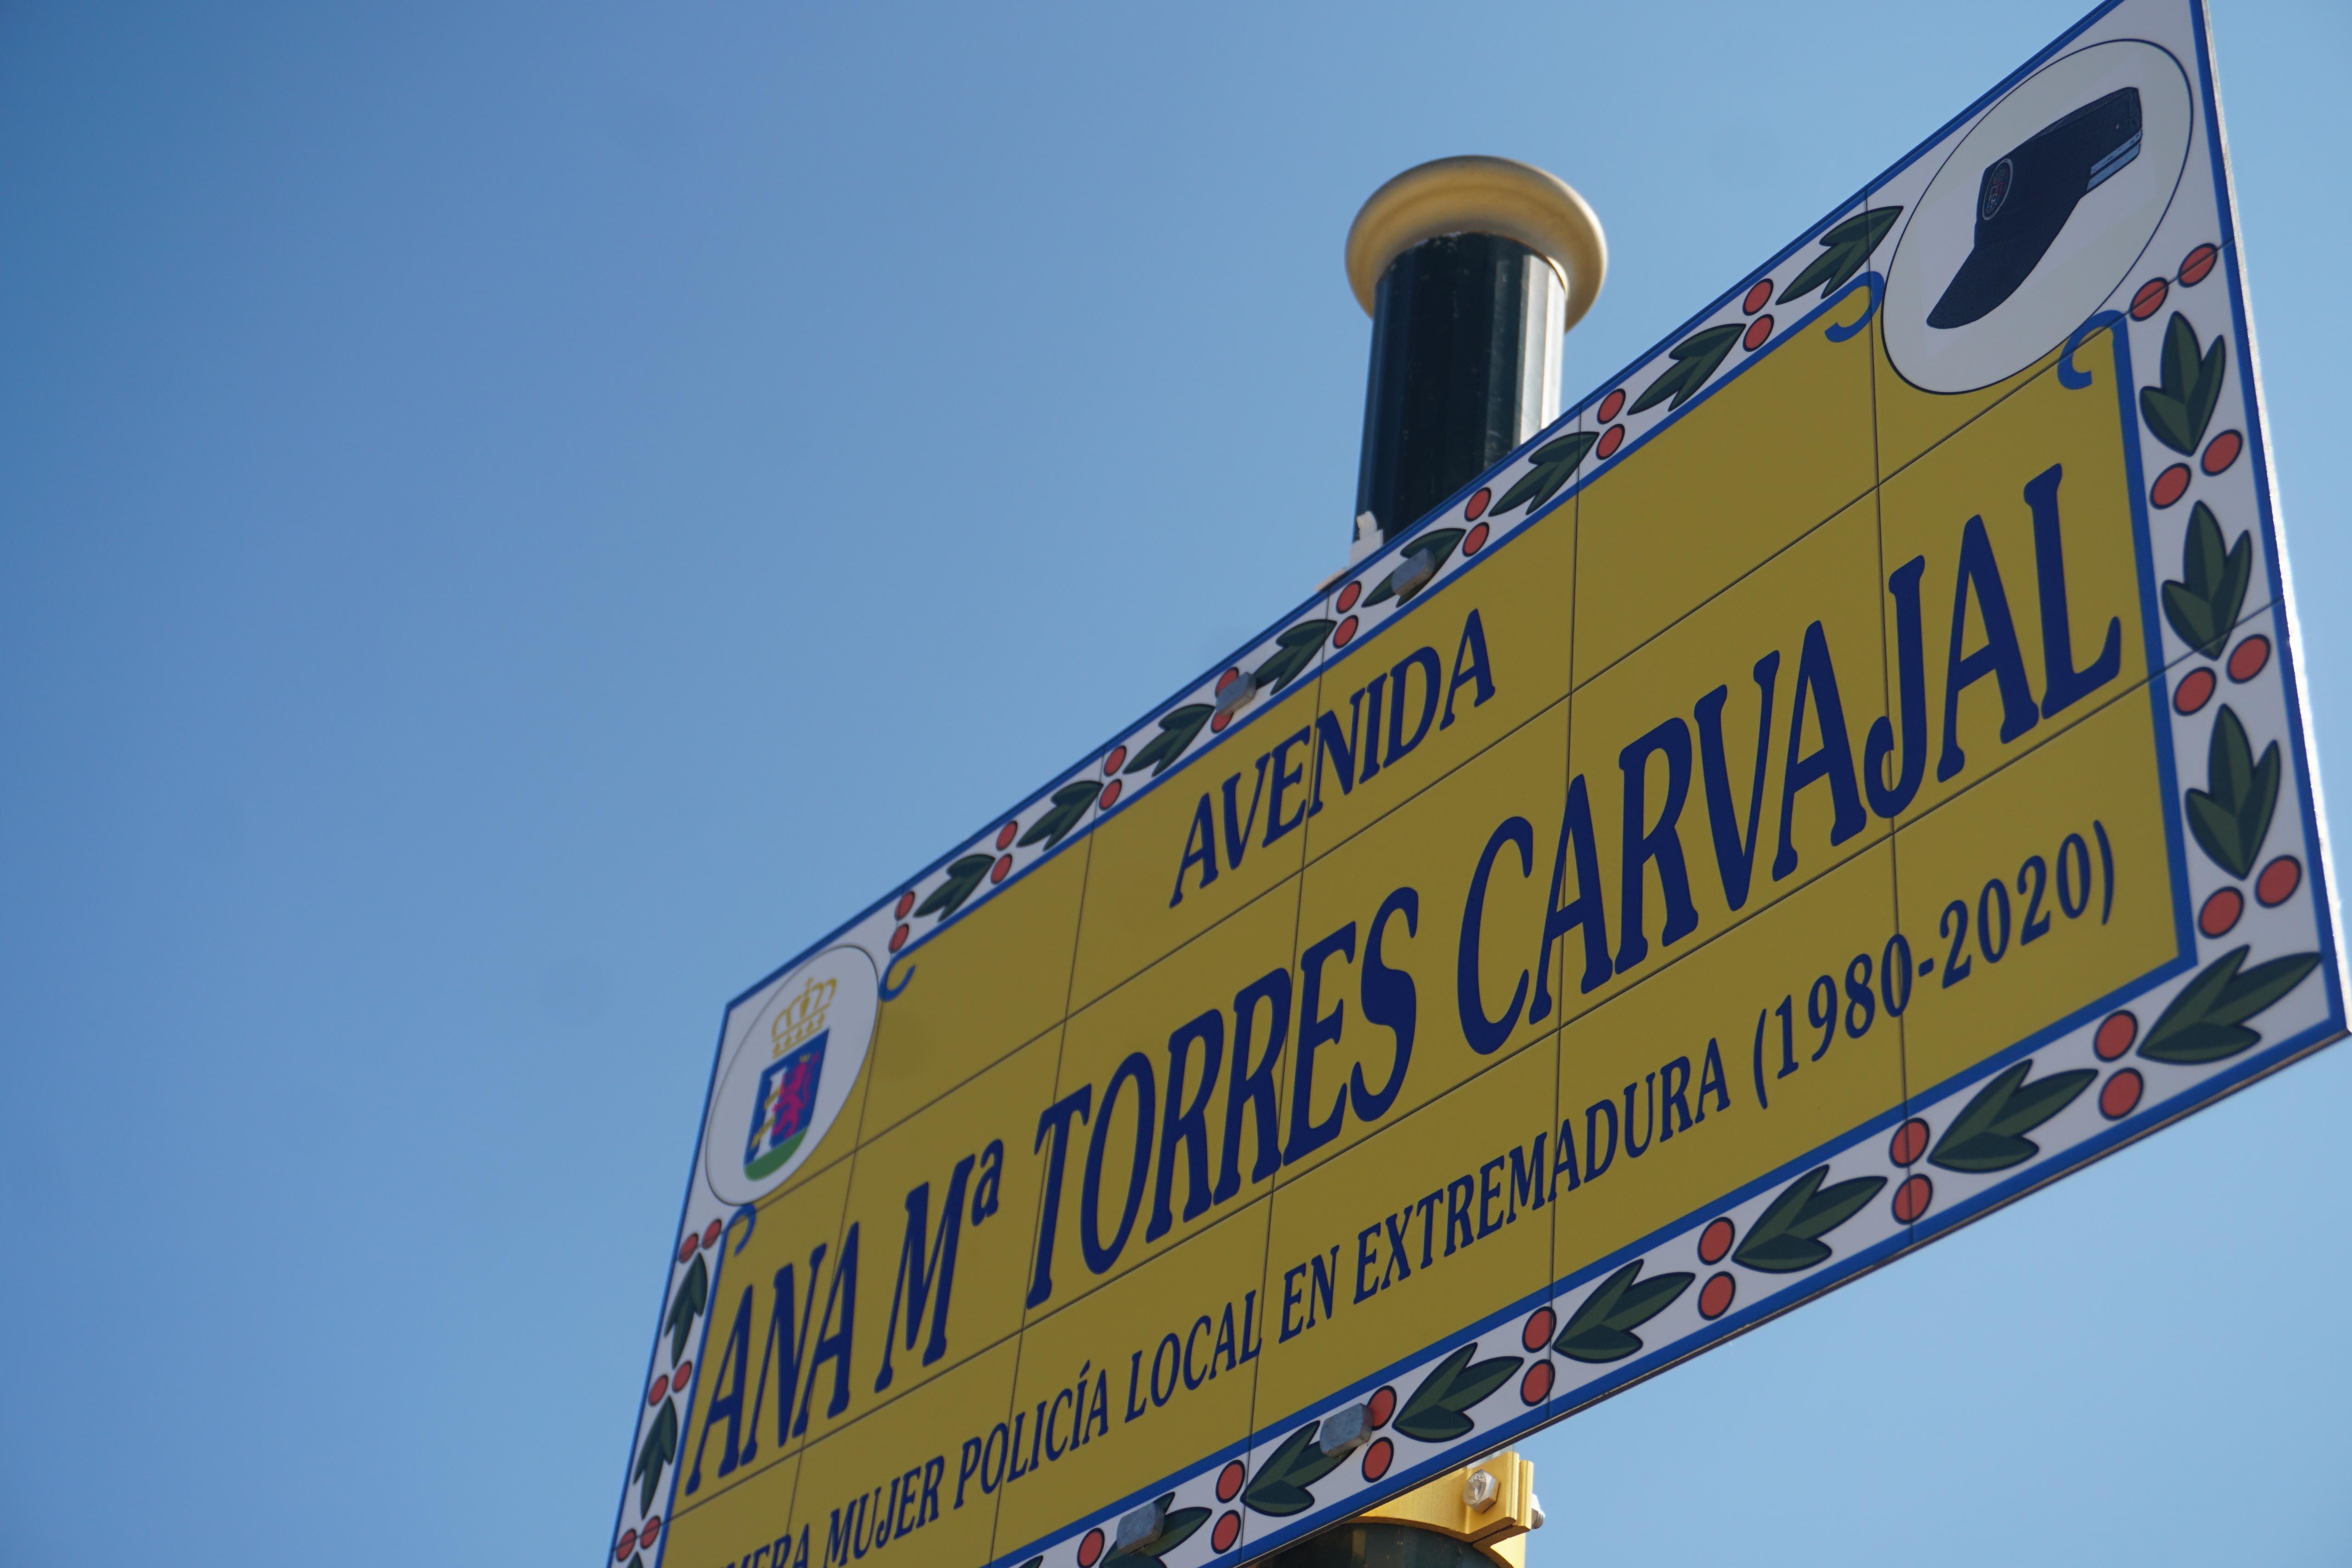 Inauguración de la avenida Ana María Torres Carvajal.